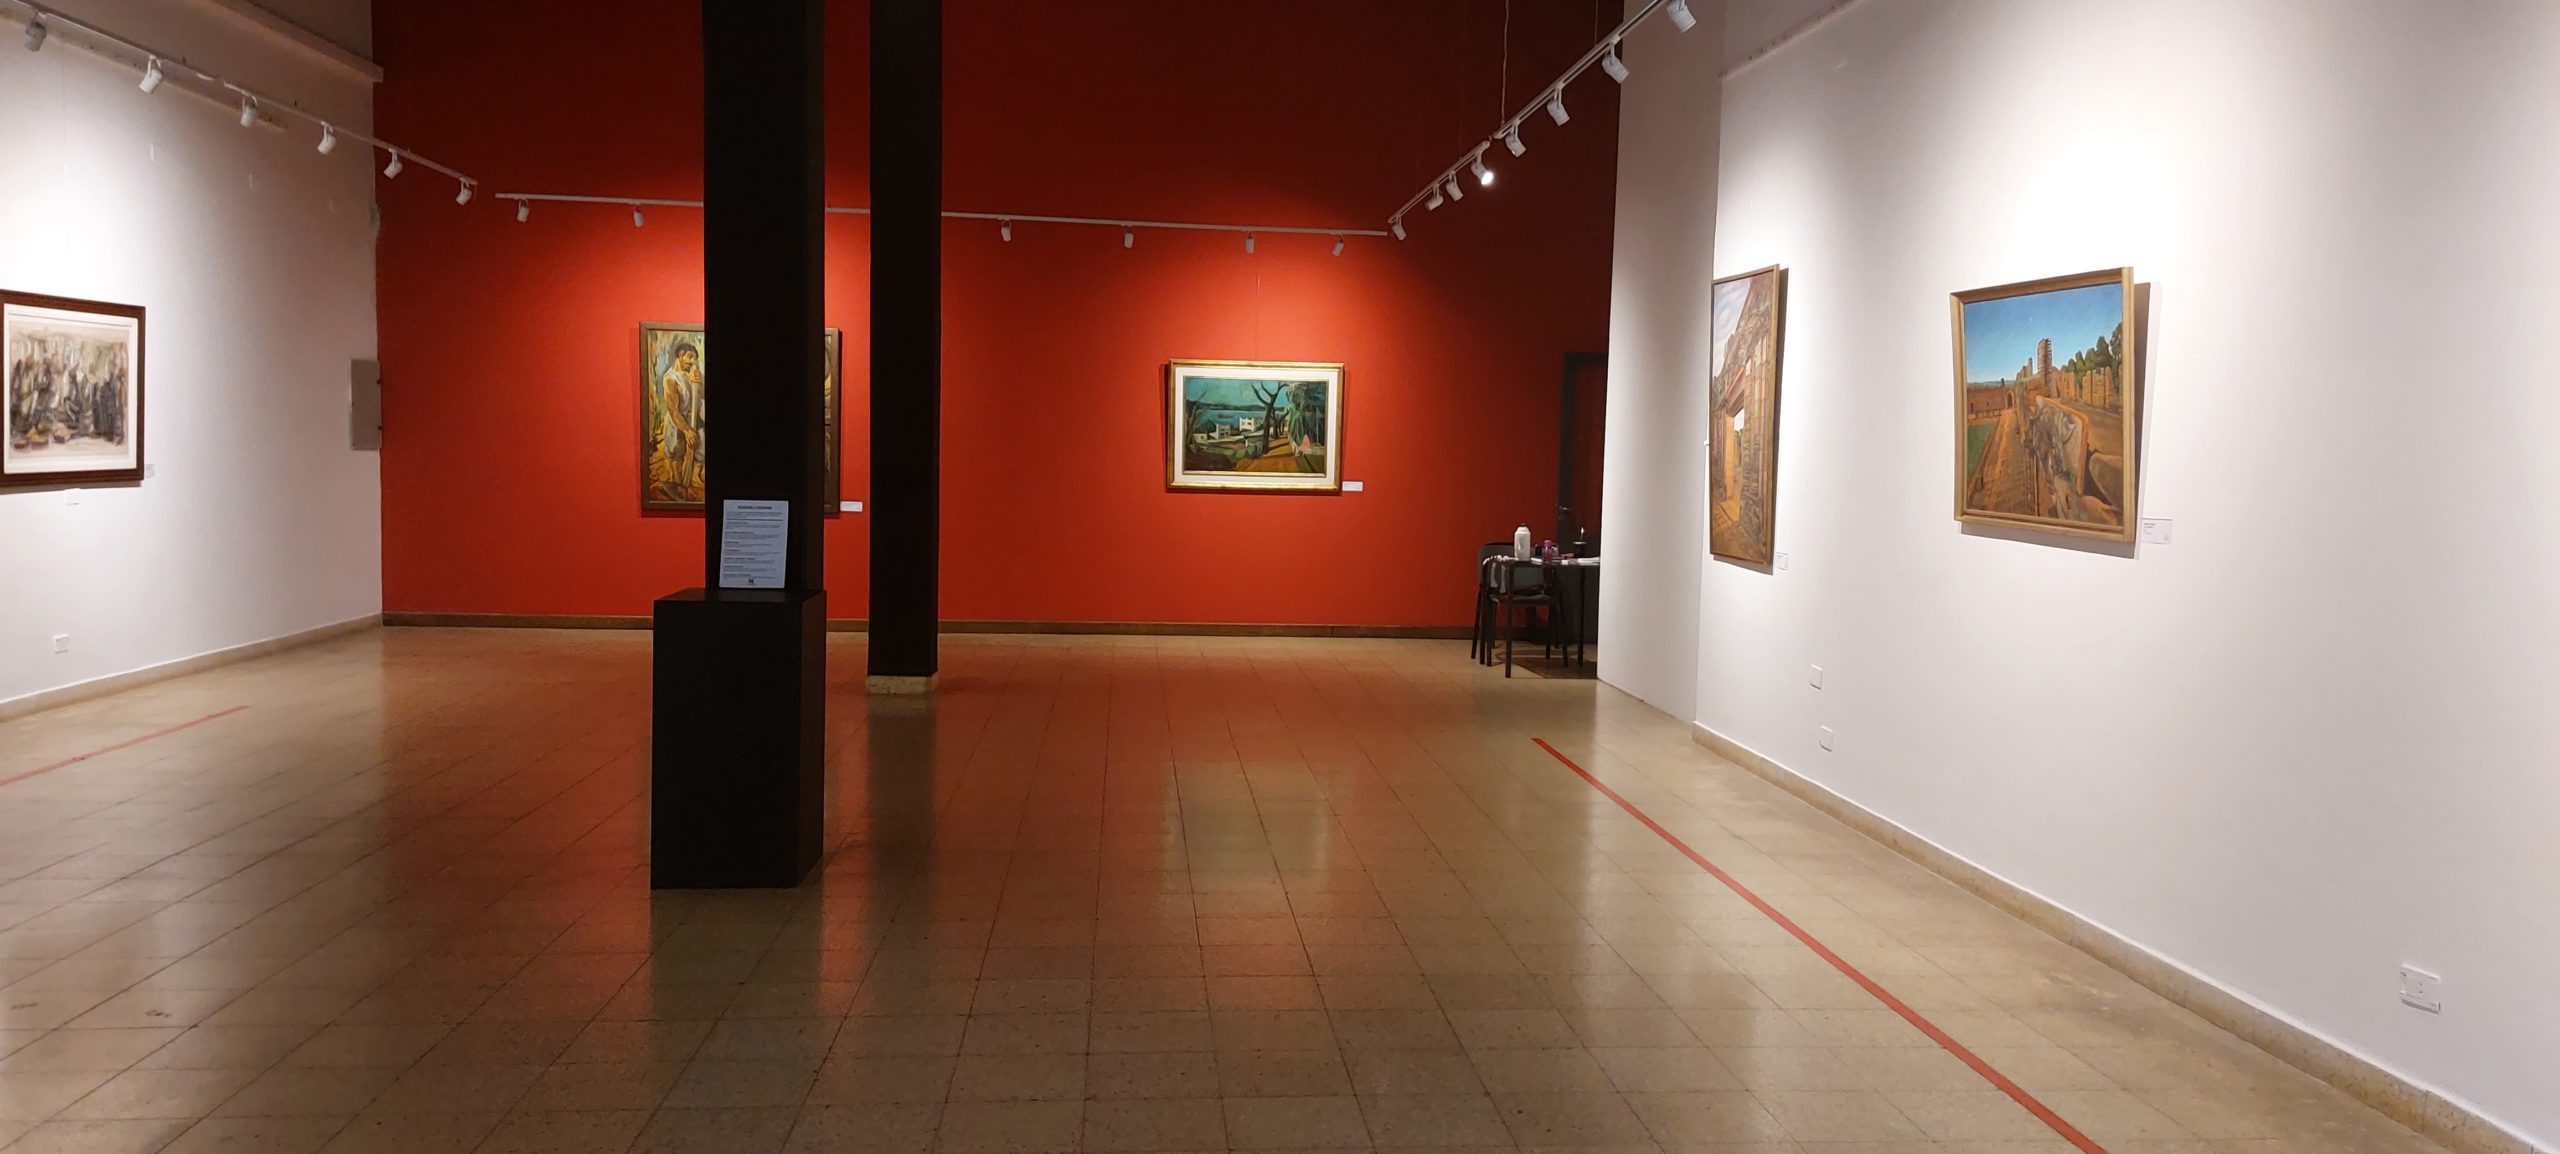 Muestras artísticas para visitar en el Museo de Bellas Artes Juan Yaparí este abril imagen-2